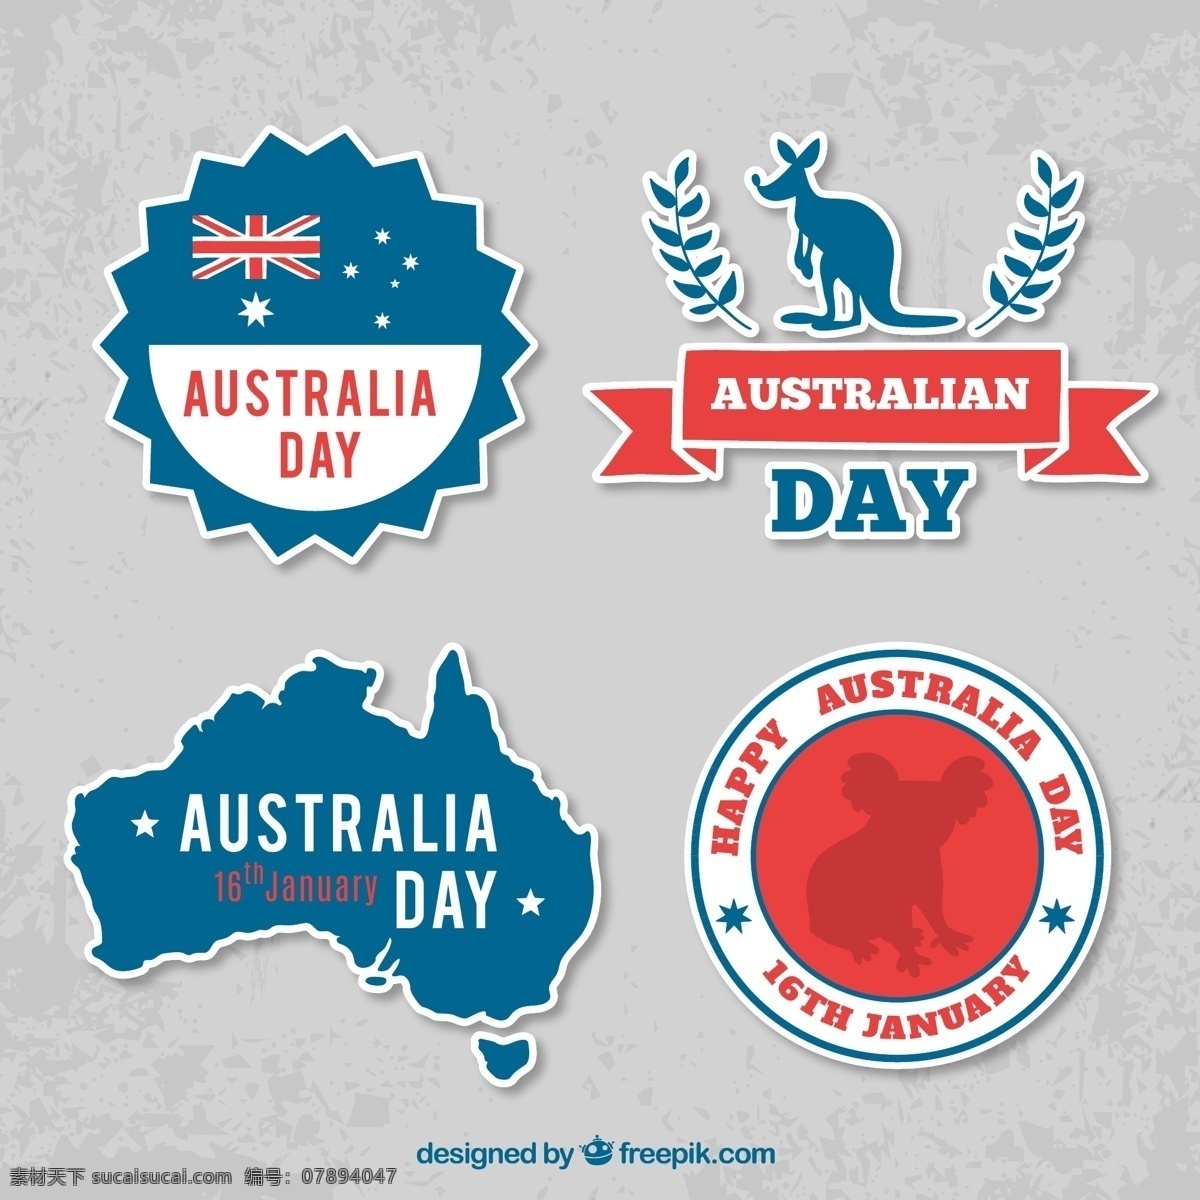 款 创意 澳大利亚 日 标签 考拉熊 袋鼠 澳大利亚日 澳大利亚地图 澳大利亚国旗 标志图标 公共标识标志